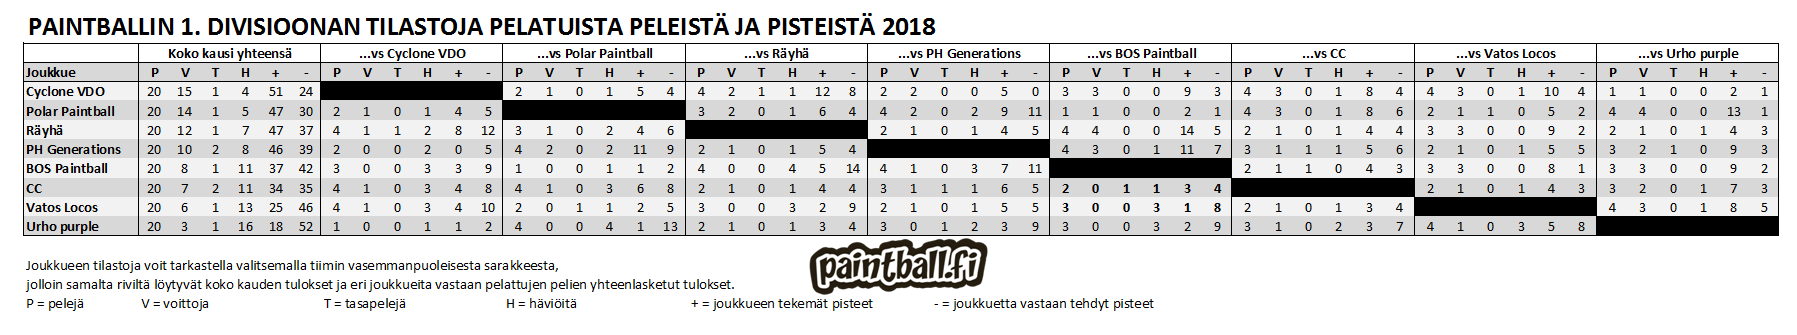 2018_1divisioona_tilastot.PNG